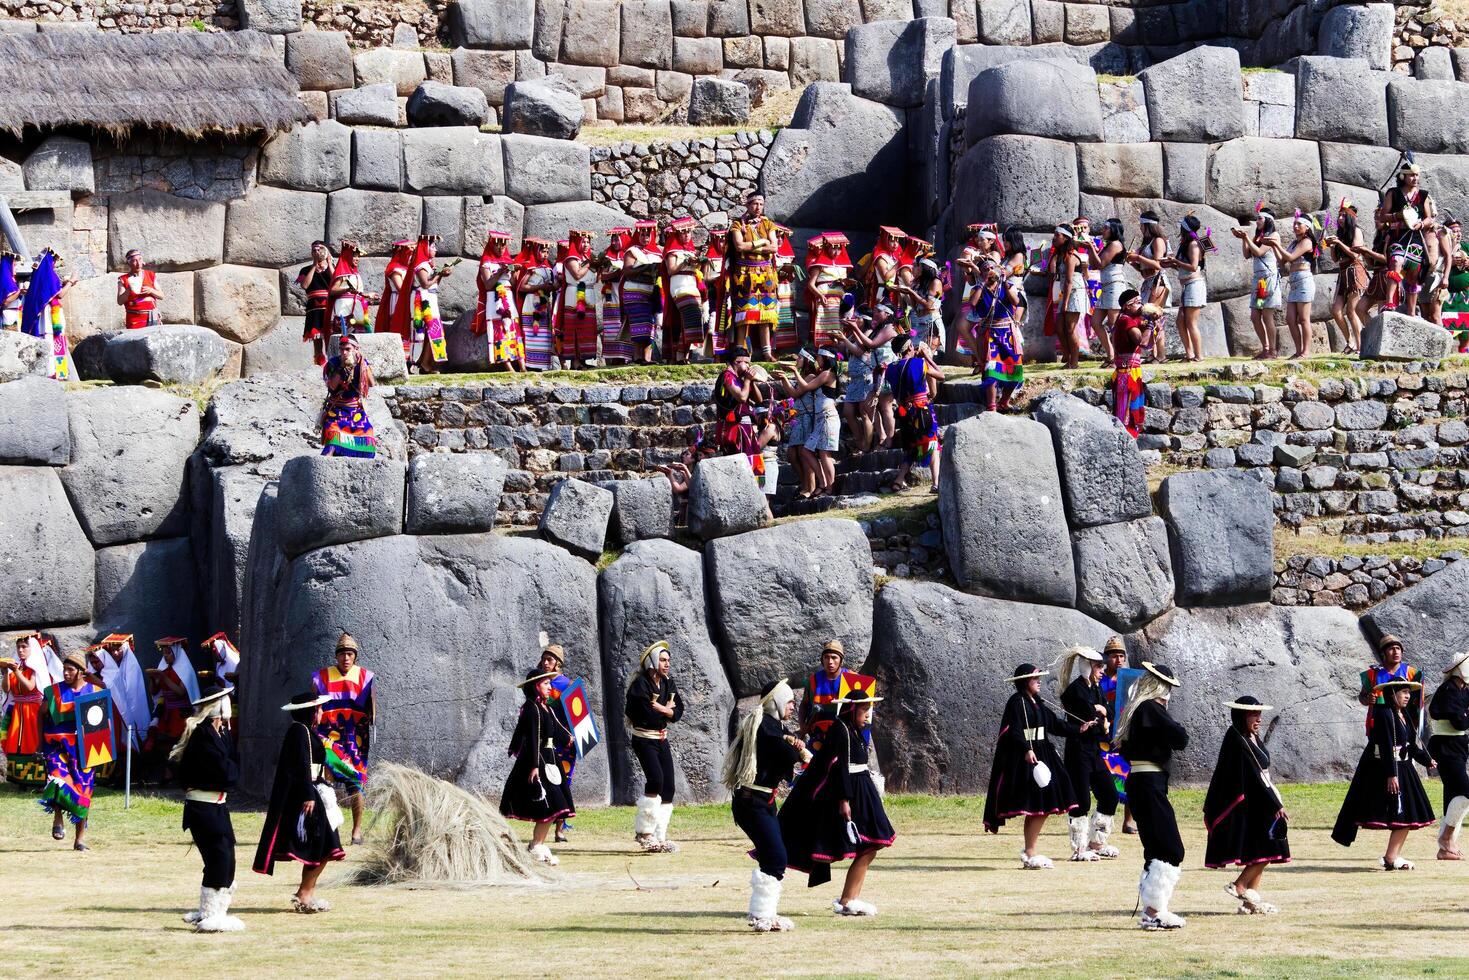 cusco, Perú, 2015 - hombres y mujer en tradicional disfraz Inti Raymi festival sur America foto